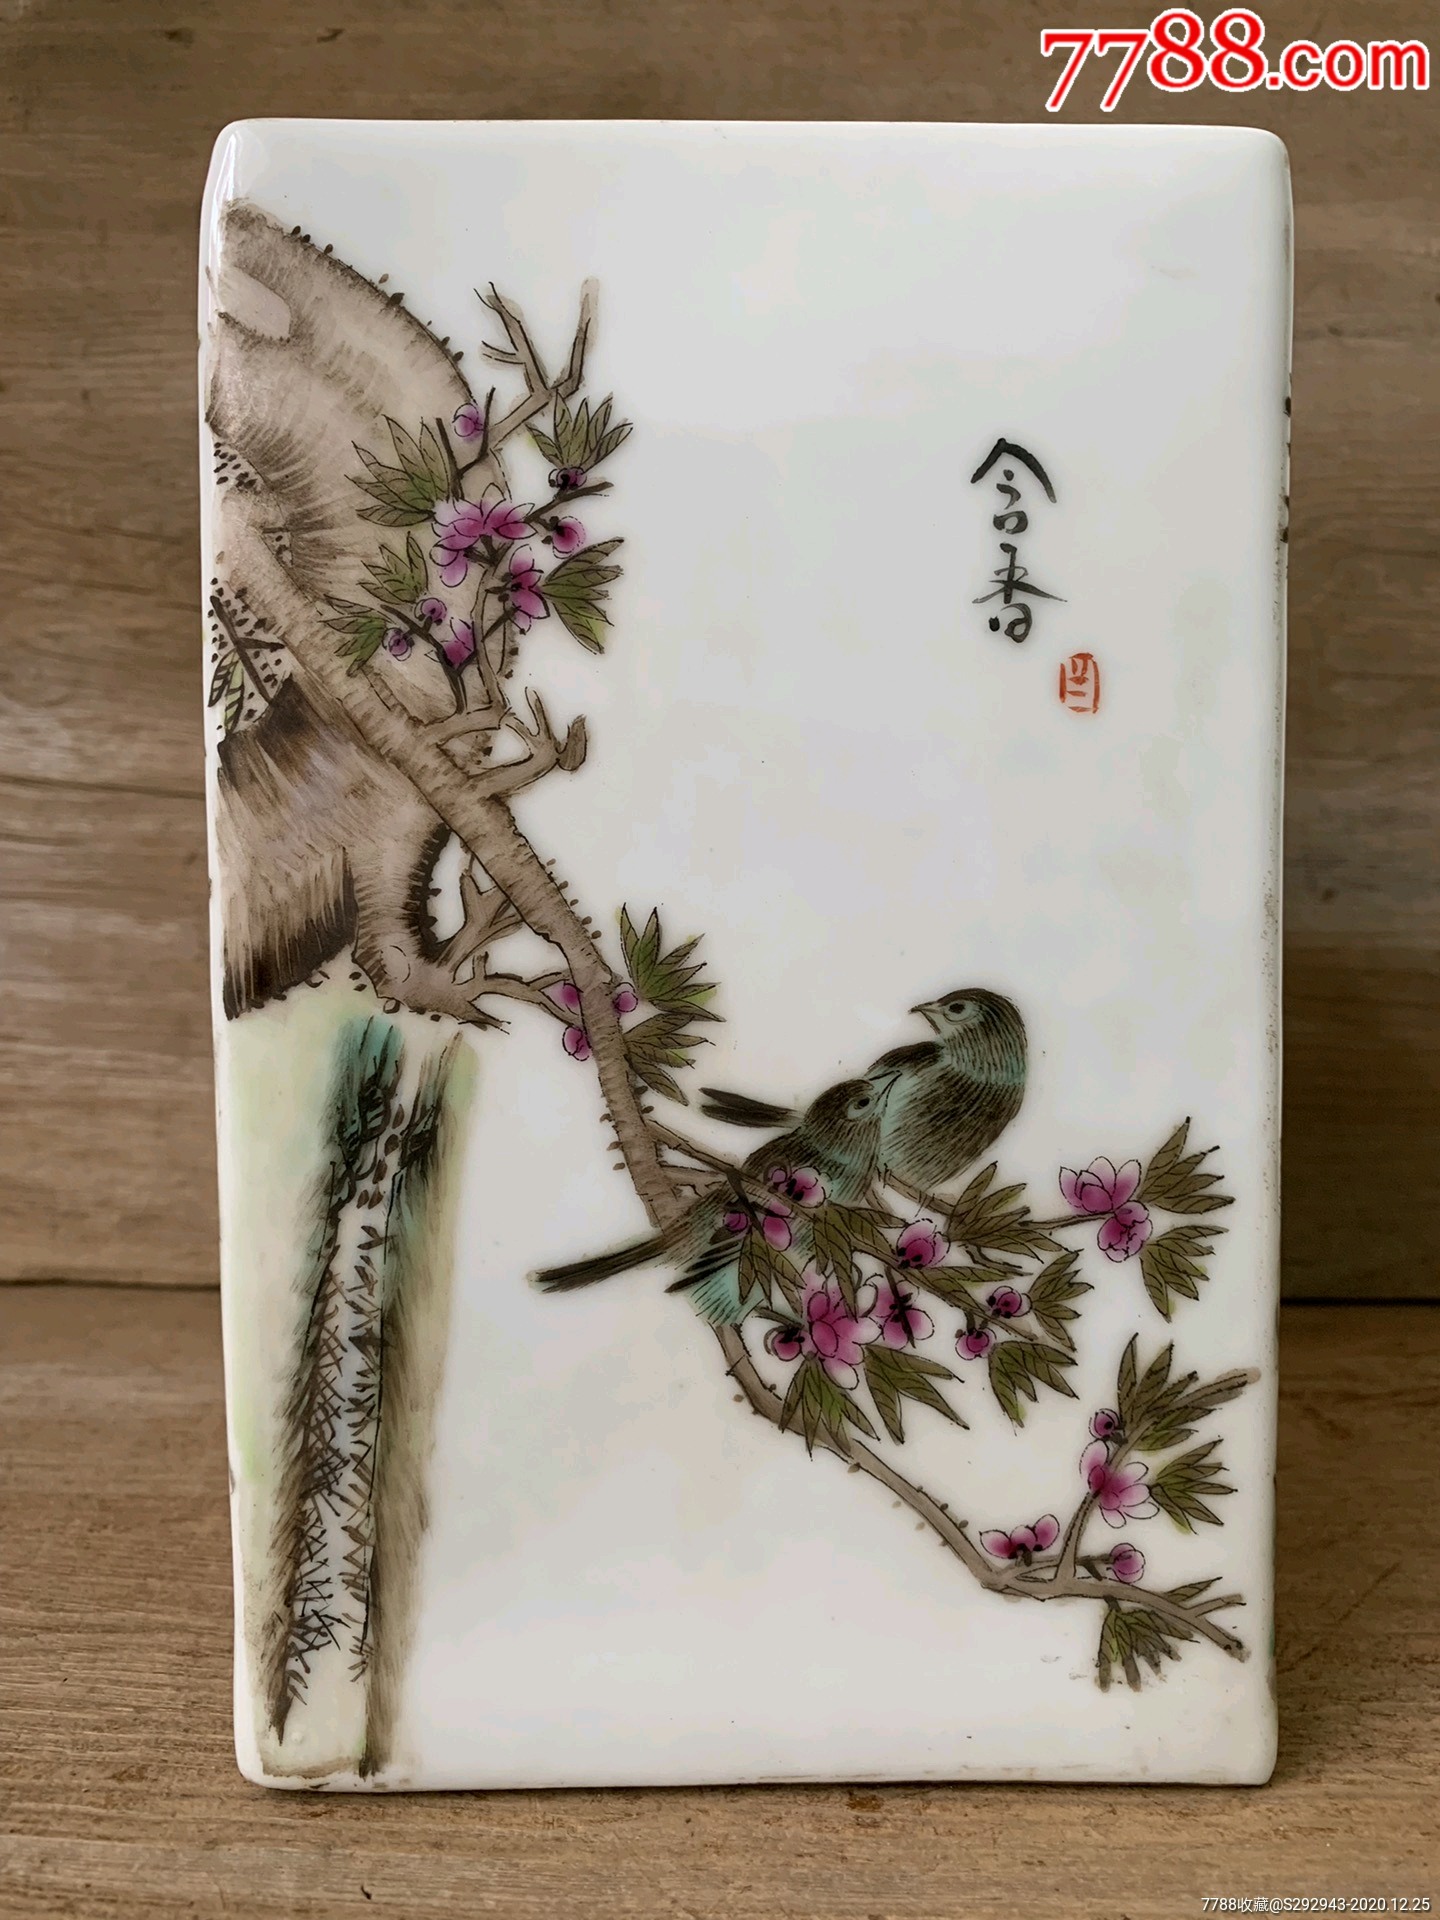 民国画瓷名家珠山八友刘雨岑手绘花鸟笔筒,画工细致逼真,瓷质细腻